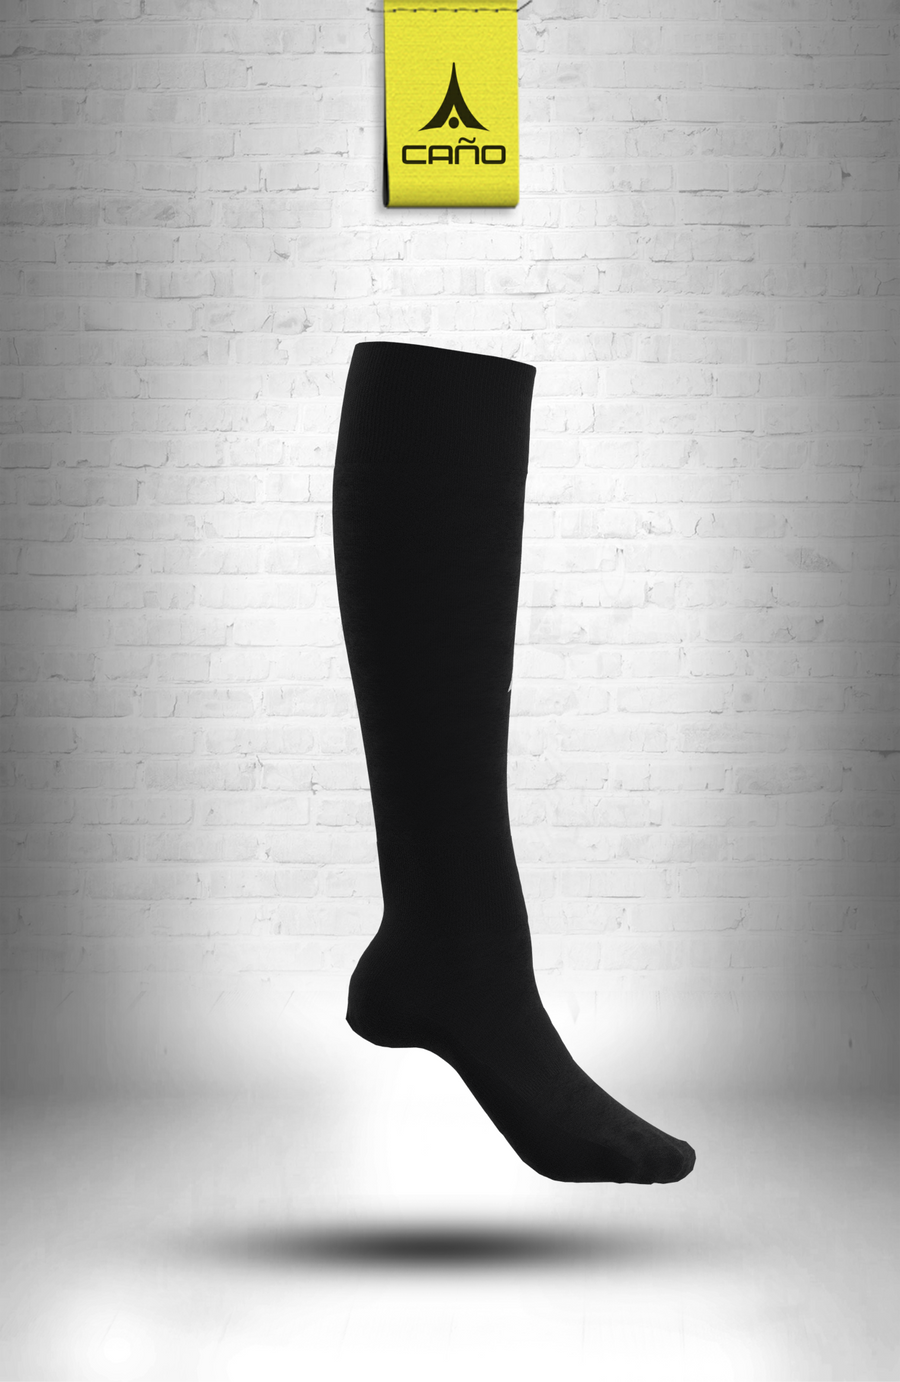 $10.00 - Caño Black Soccer Sock